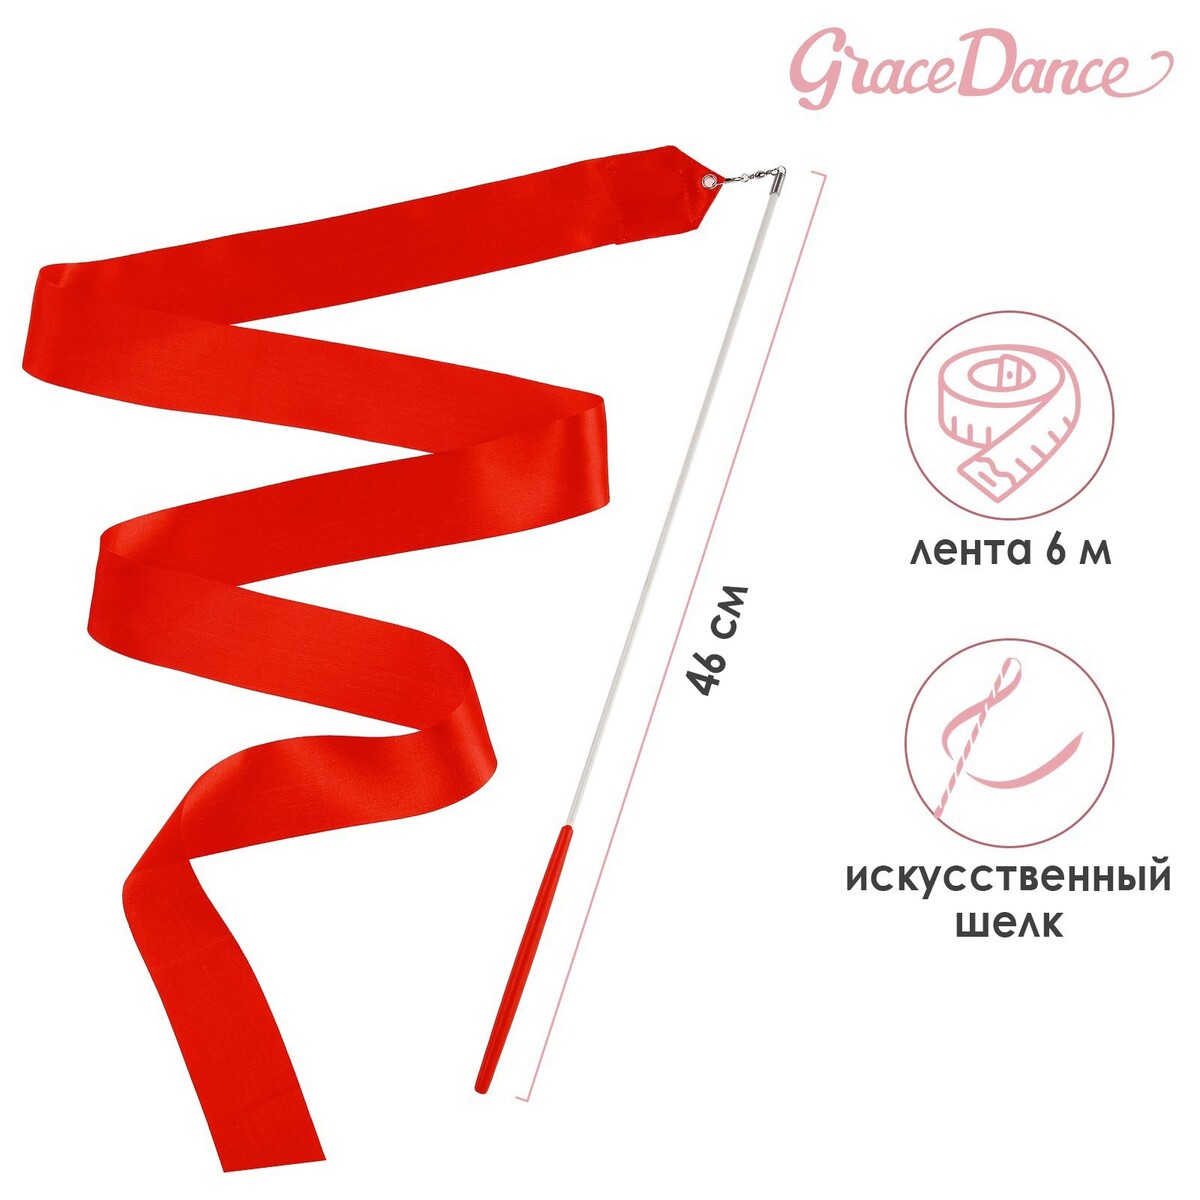 Лента для художественной гимнастики с палочкой grace dance, 6 м, цвет красный лента для художественной гимнастики с палочкой grace dance 4 м оранжевый